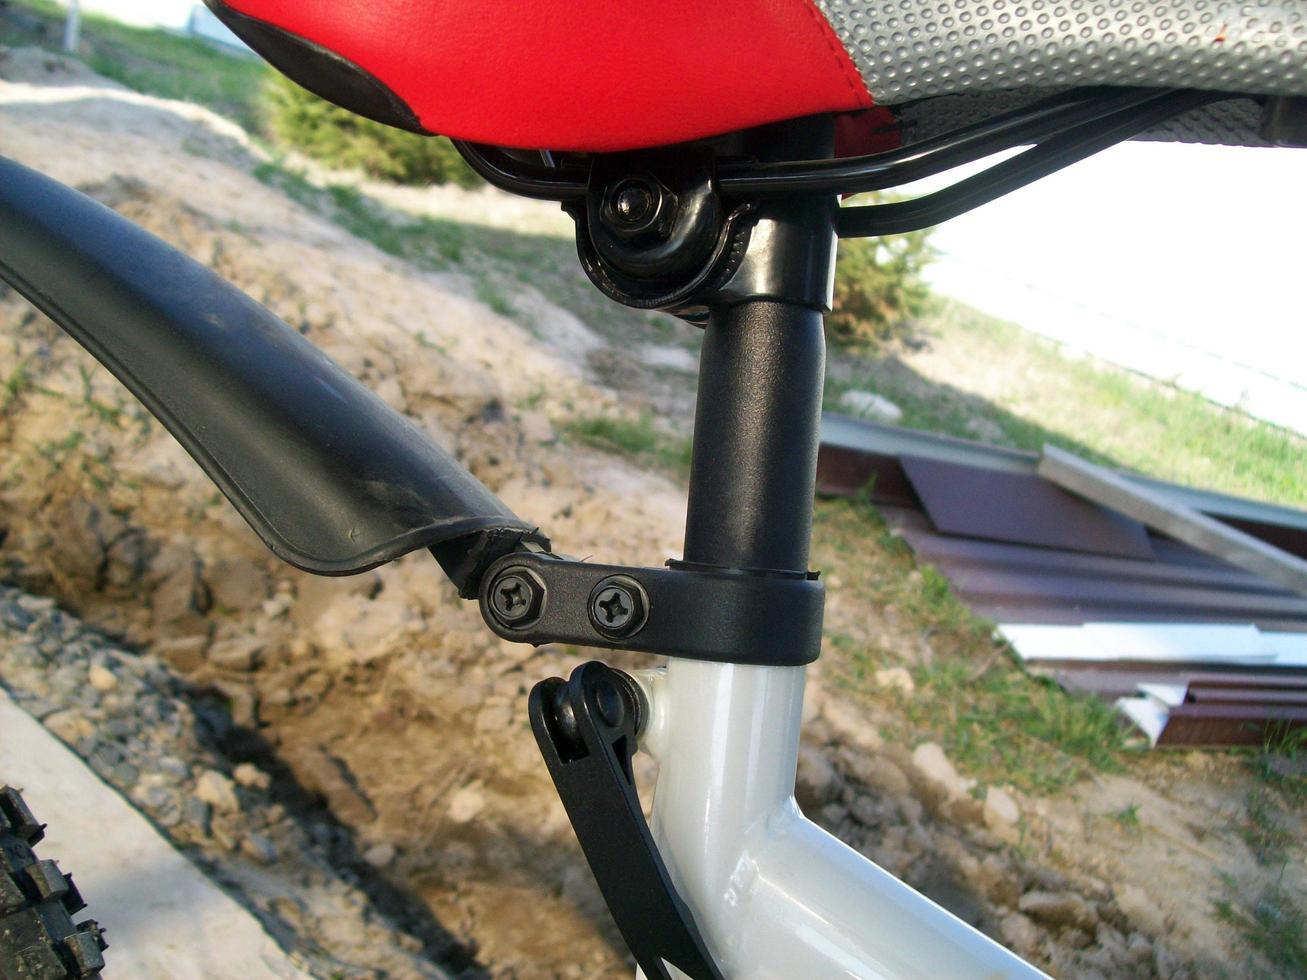 close-up universal de bicicleta de estrada em detalhes foto